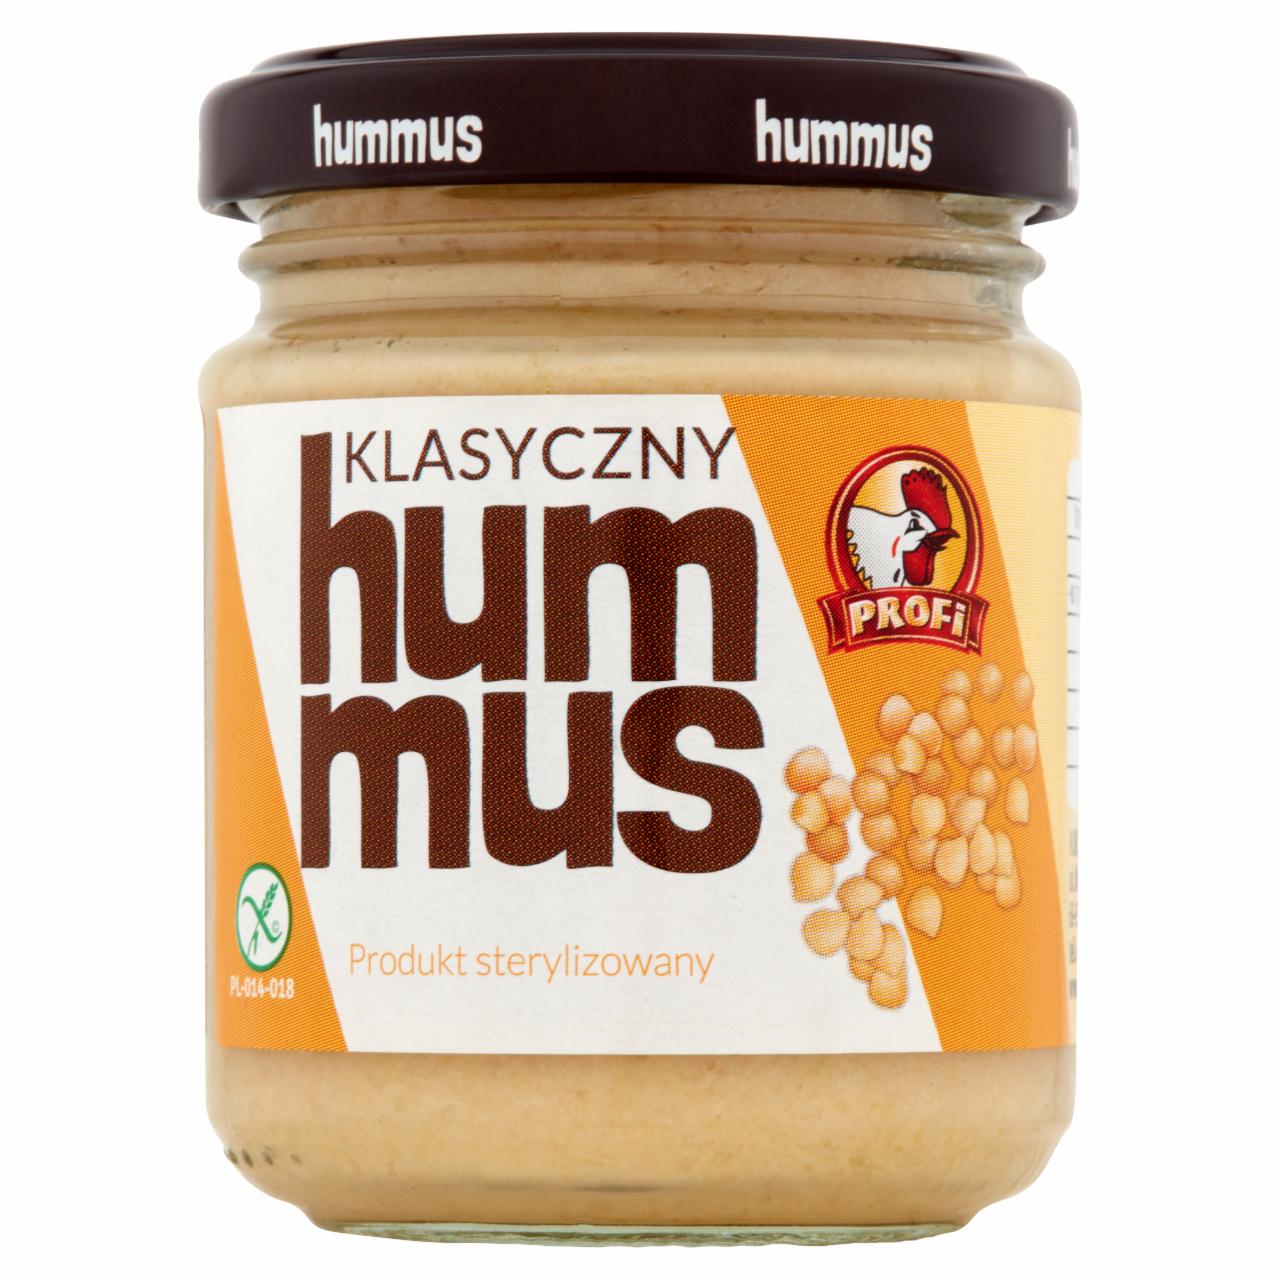 Zdjęcia - Profi Hummus klasyczny 105 g